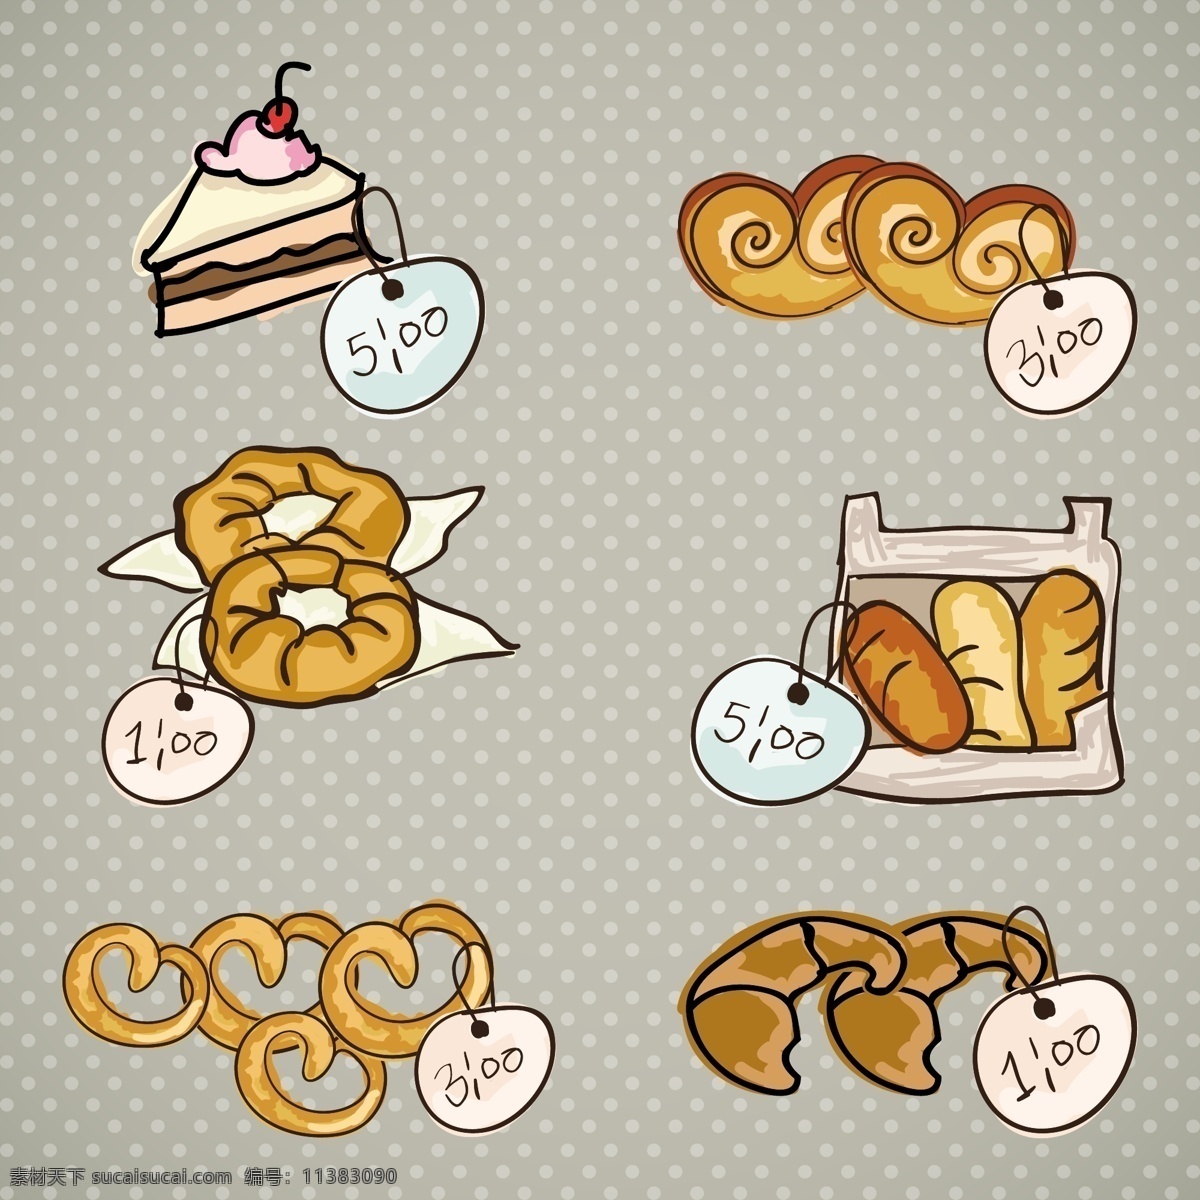 卡通 糕点 价格牌 矢量 面包 奶油蛋糕 矢量图 甜甜圈 烘培食品 牛角包 其他矢量图